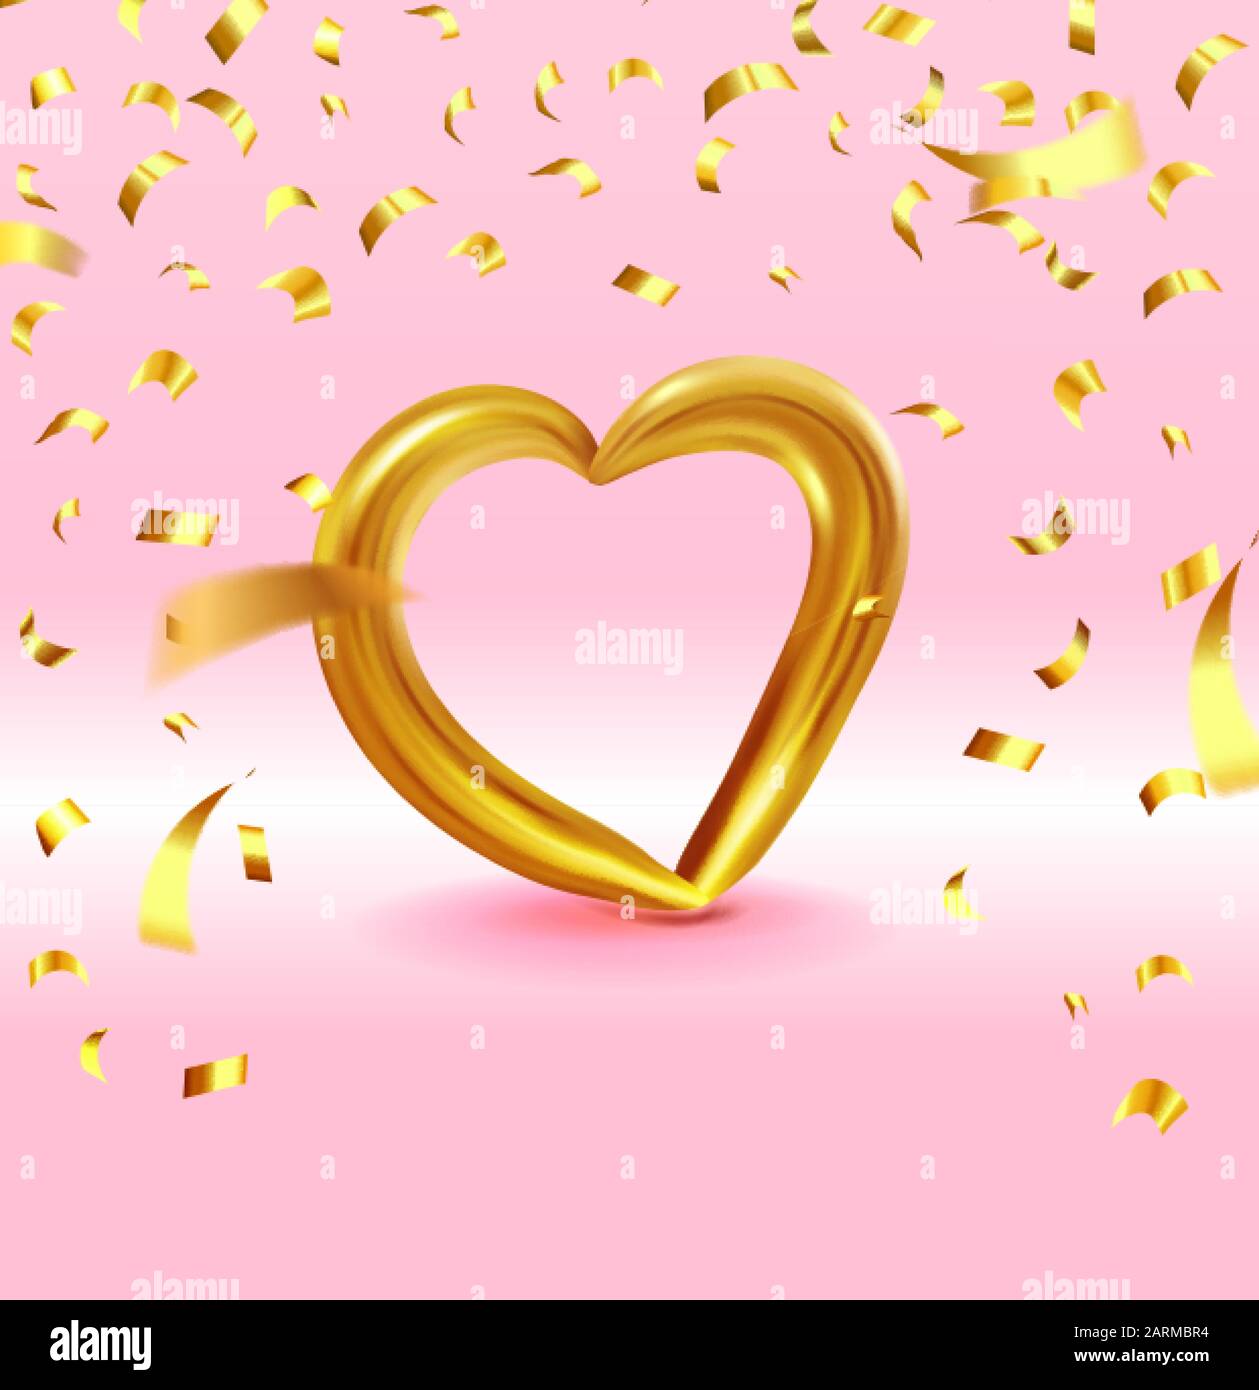 Realistisches Goldmetall-Herz mit herabfallendem goldenem Konfetti. Vektor Valentines Herz auf rosa Hintergrund. Vektordarstellung EPS 10 Stock Vektor